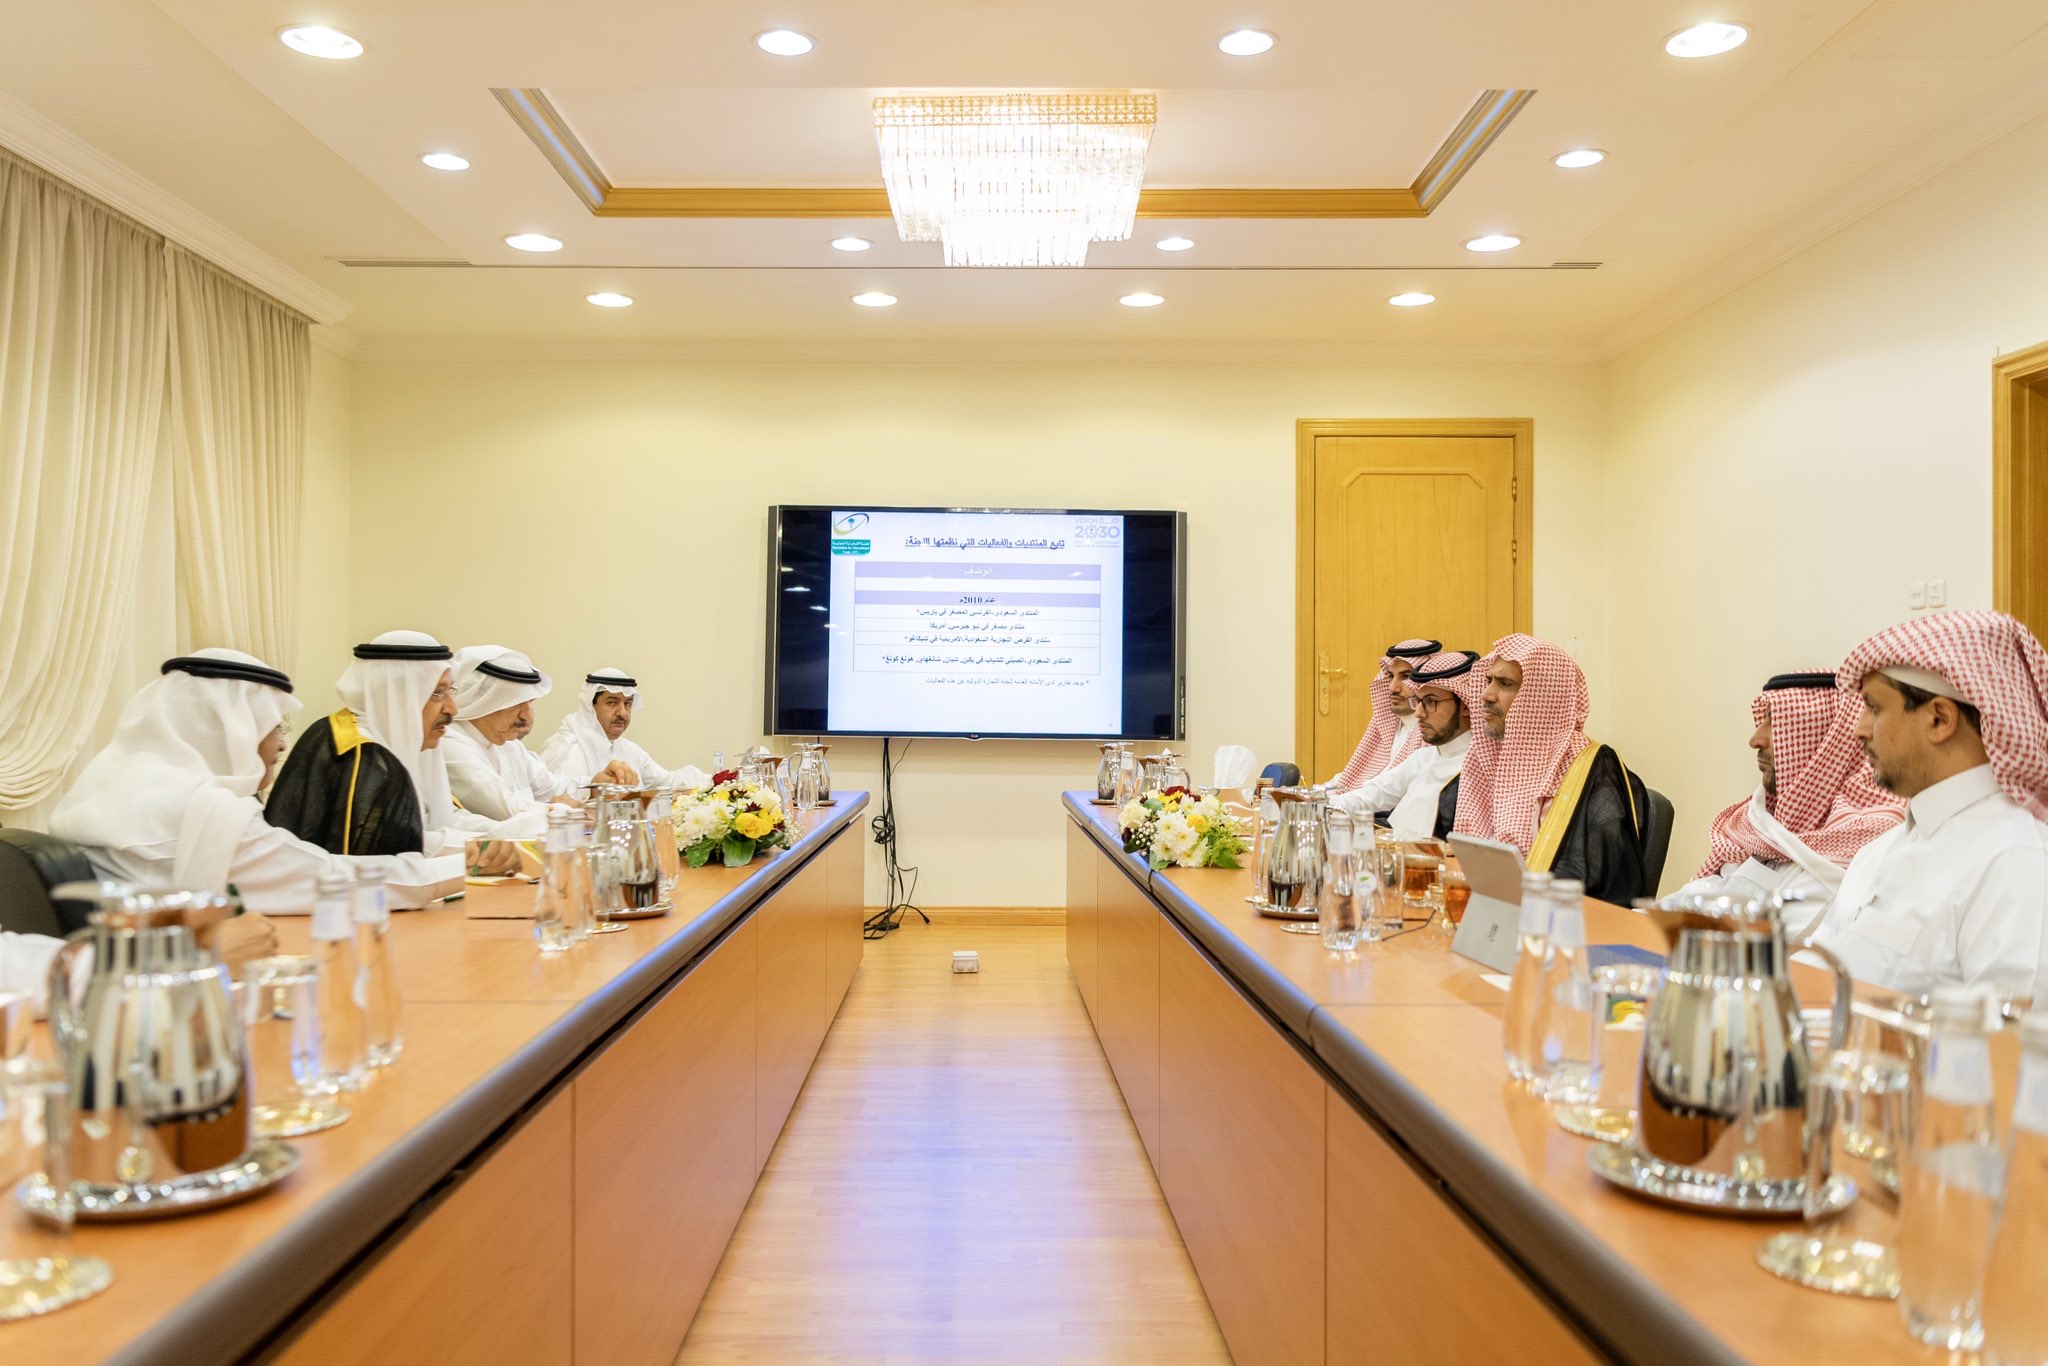 ڈاکٹر محمد العیسی نے آج سعودی چیمبرز آف کامرس اینڈ انڈسٹری کونسل میں بین الاقوامی تجارتی کمیٹی کے چیئرمین ڈاکٹر عبد الرحمن السعید اور ان کے ہمراہ وفد کا استقبال کیا